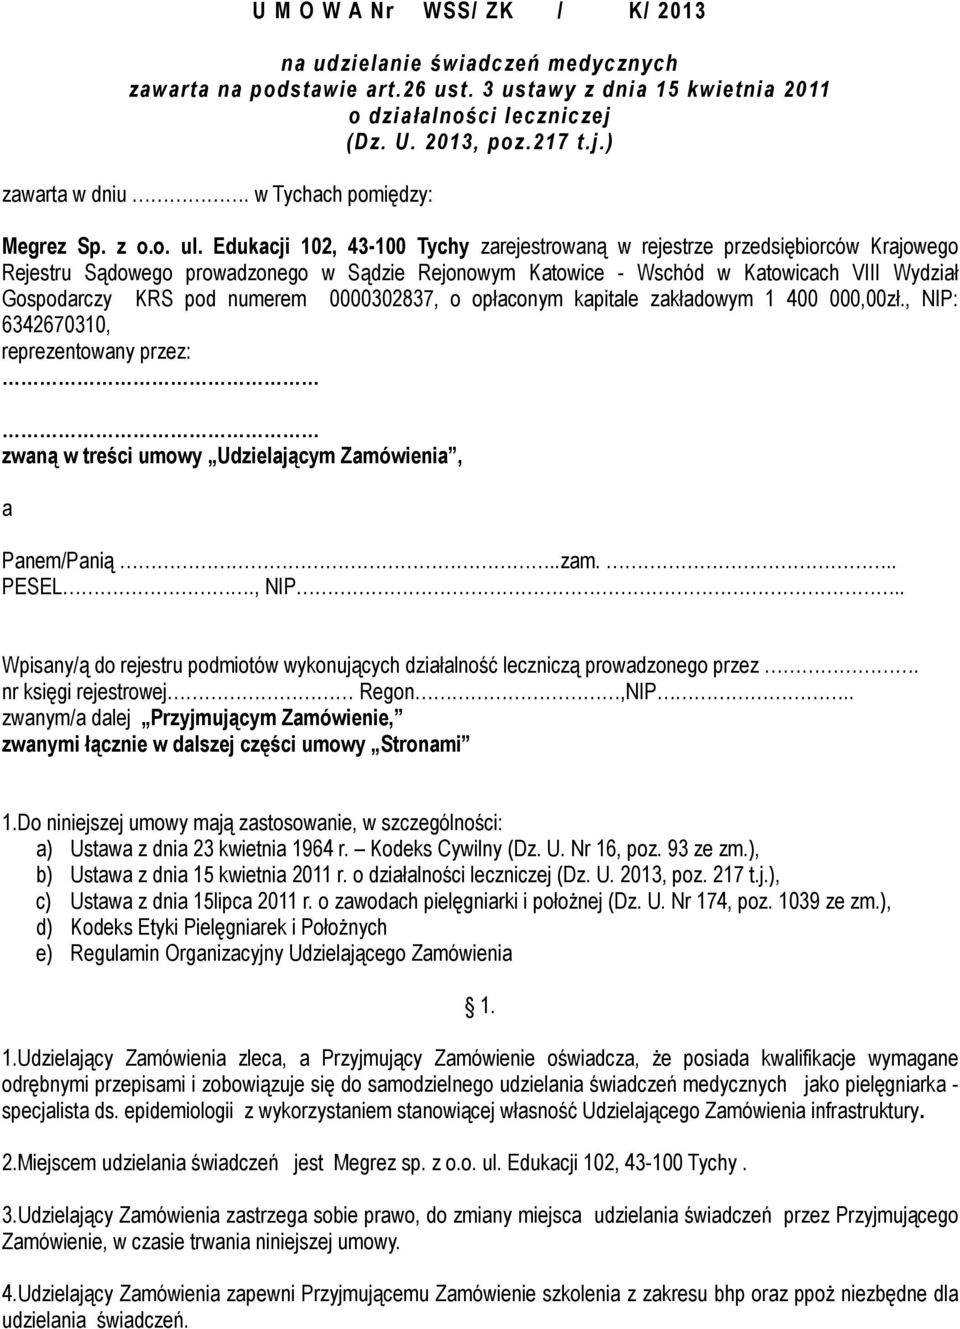 Edukacji 102, 43-100 Tychy zarejestrowaną w rejestrze przedsiębiorców Krajowego Rejestru Sądowego prowadzonego w Sądzie Rejonowym Katowice - Wschód w Katowicach VIII Wydział Gospodarczy KRS pod